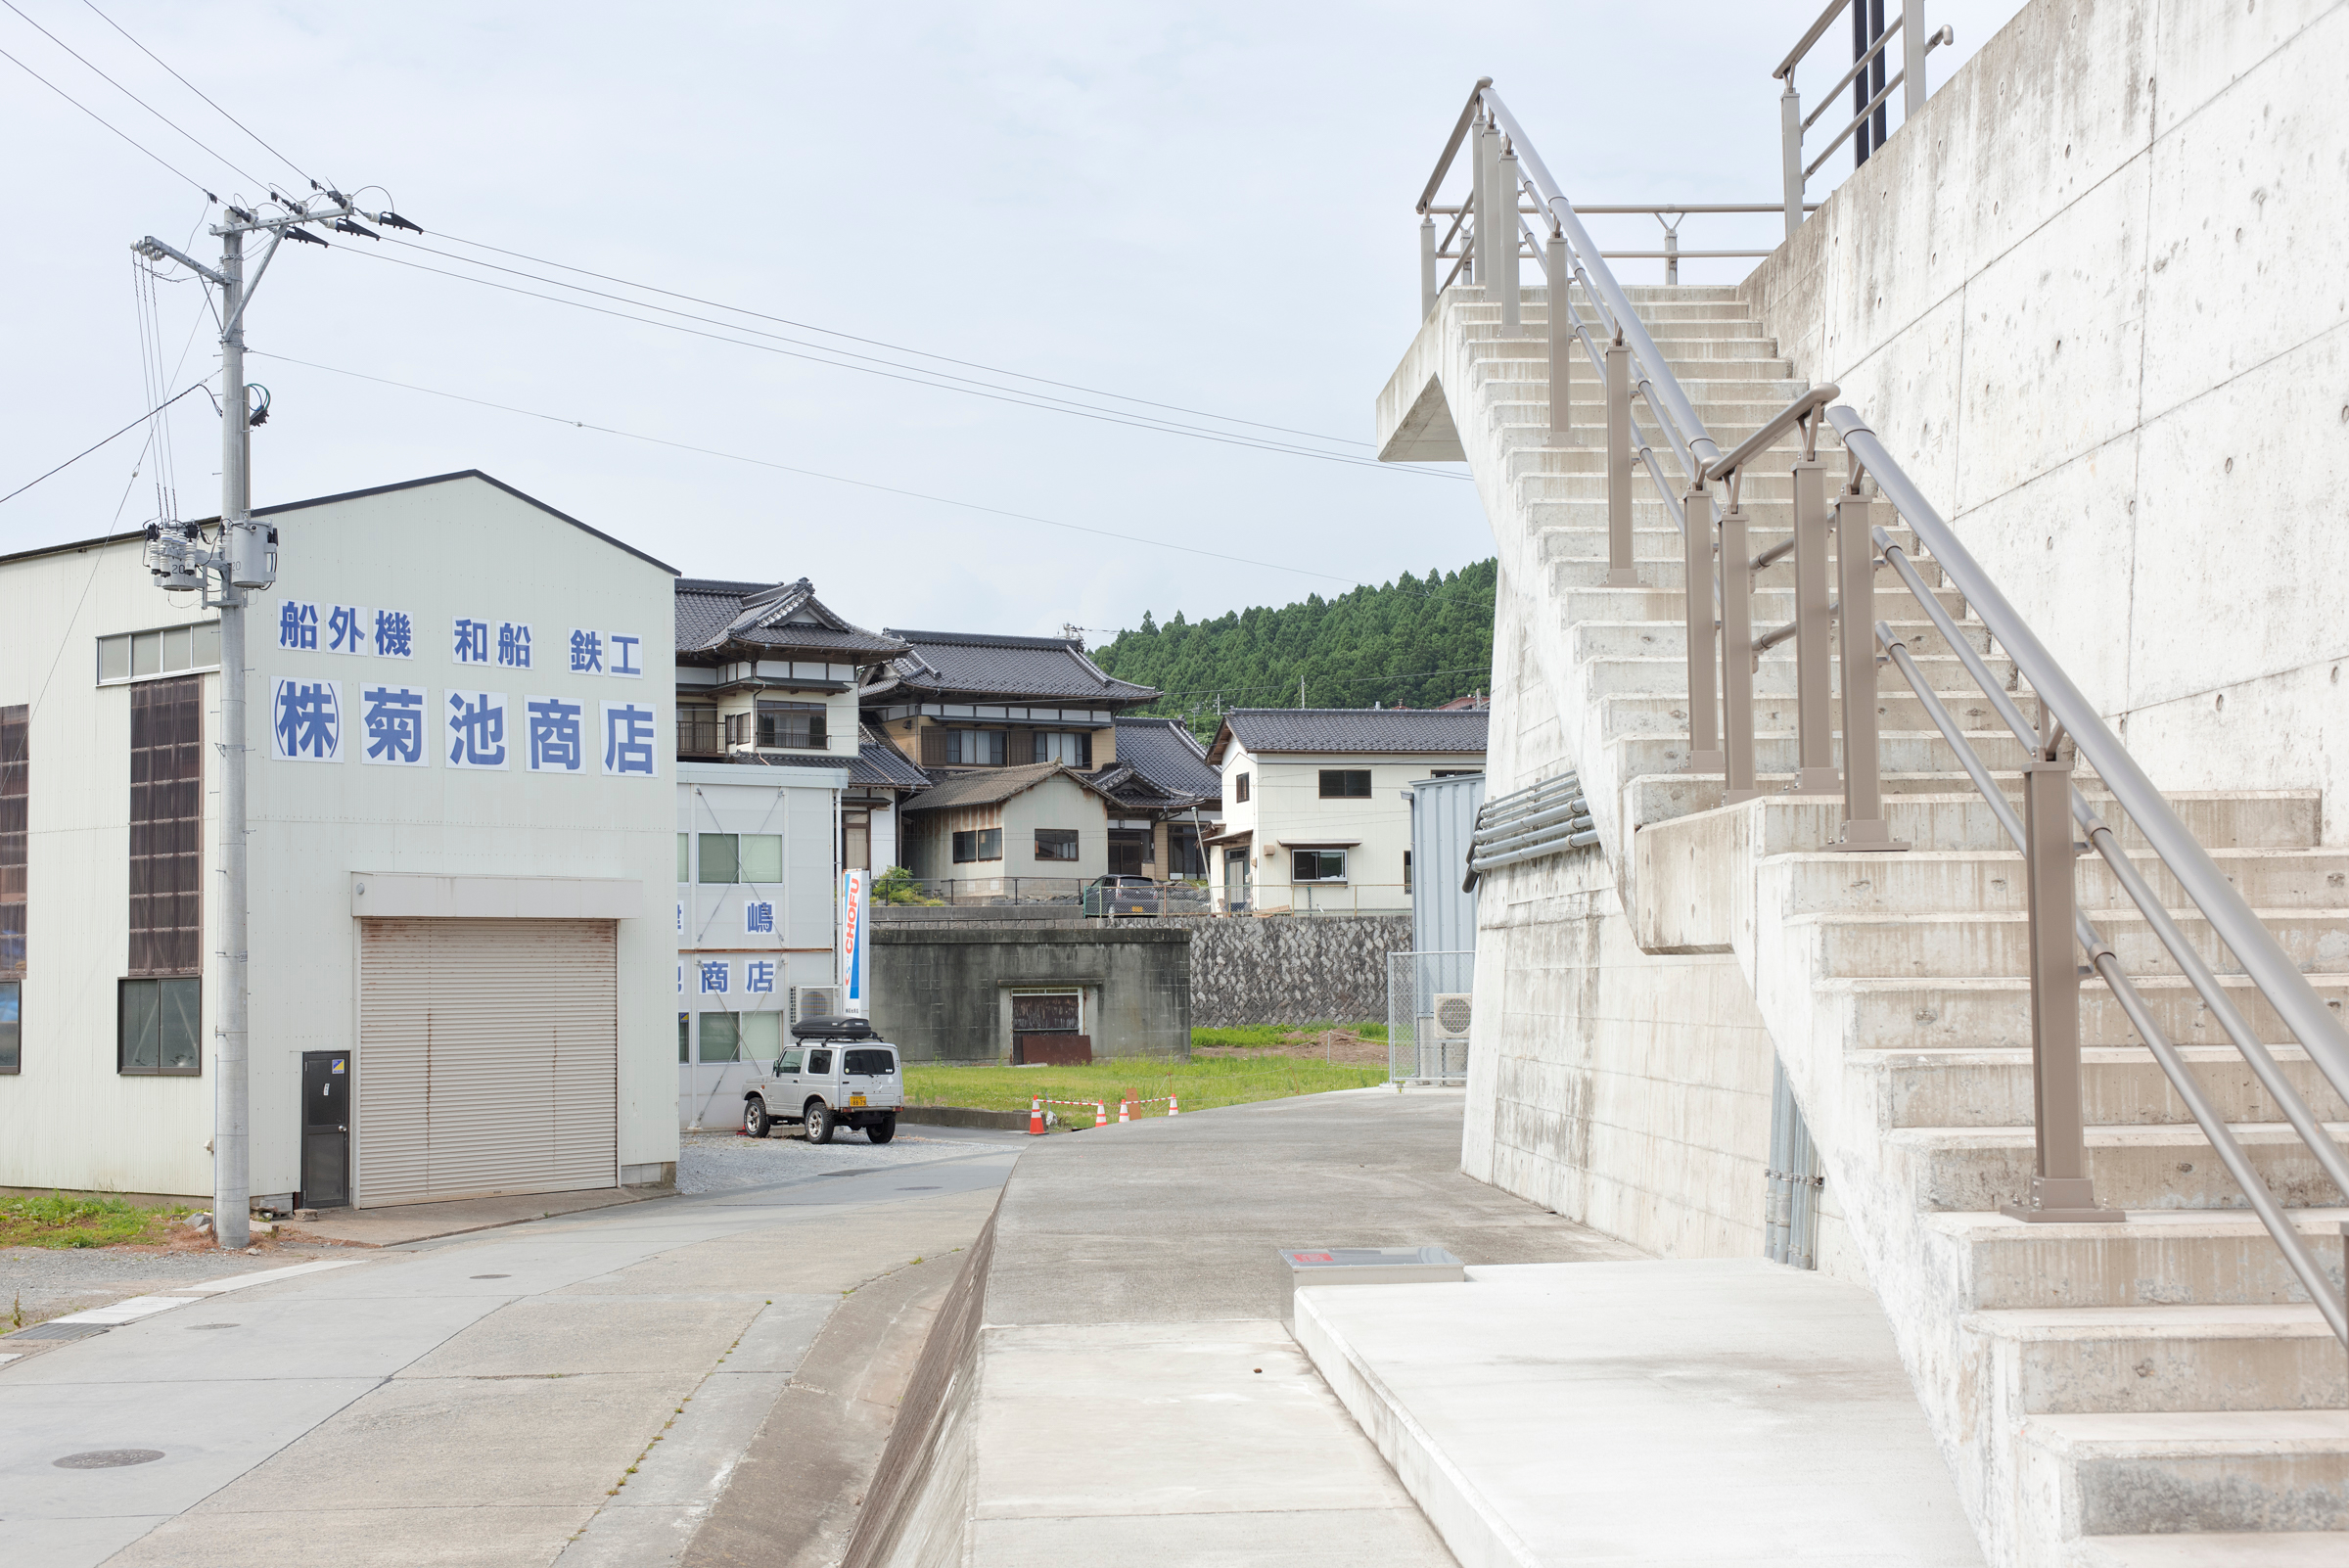     Pengkuei Ben Huang, Fishing village, Rikuzentakata, 2023

